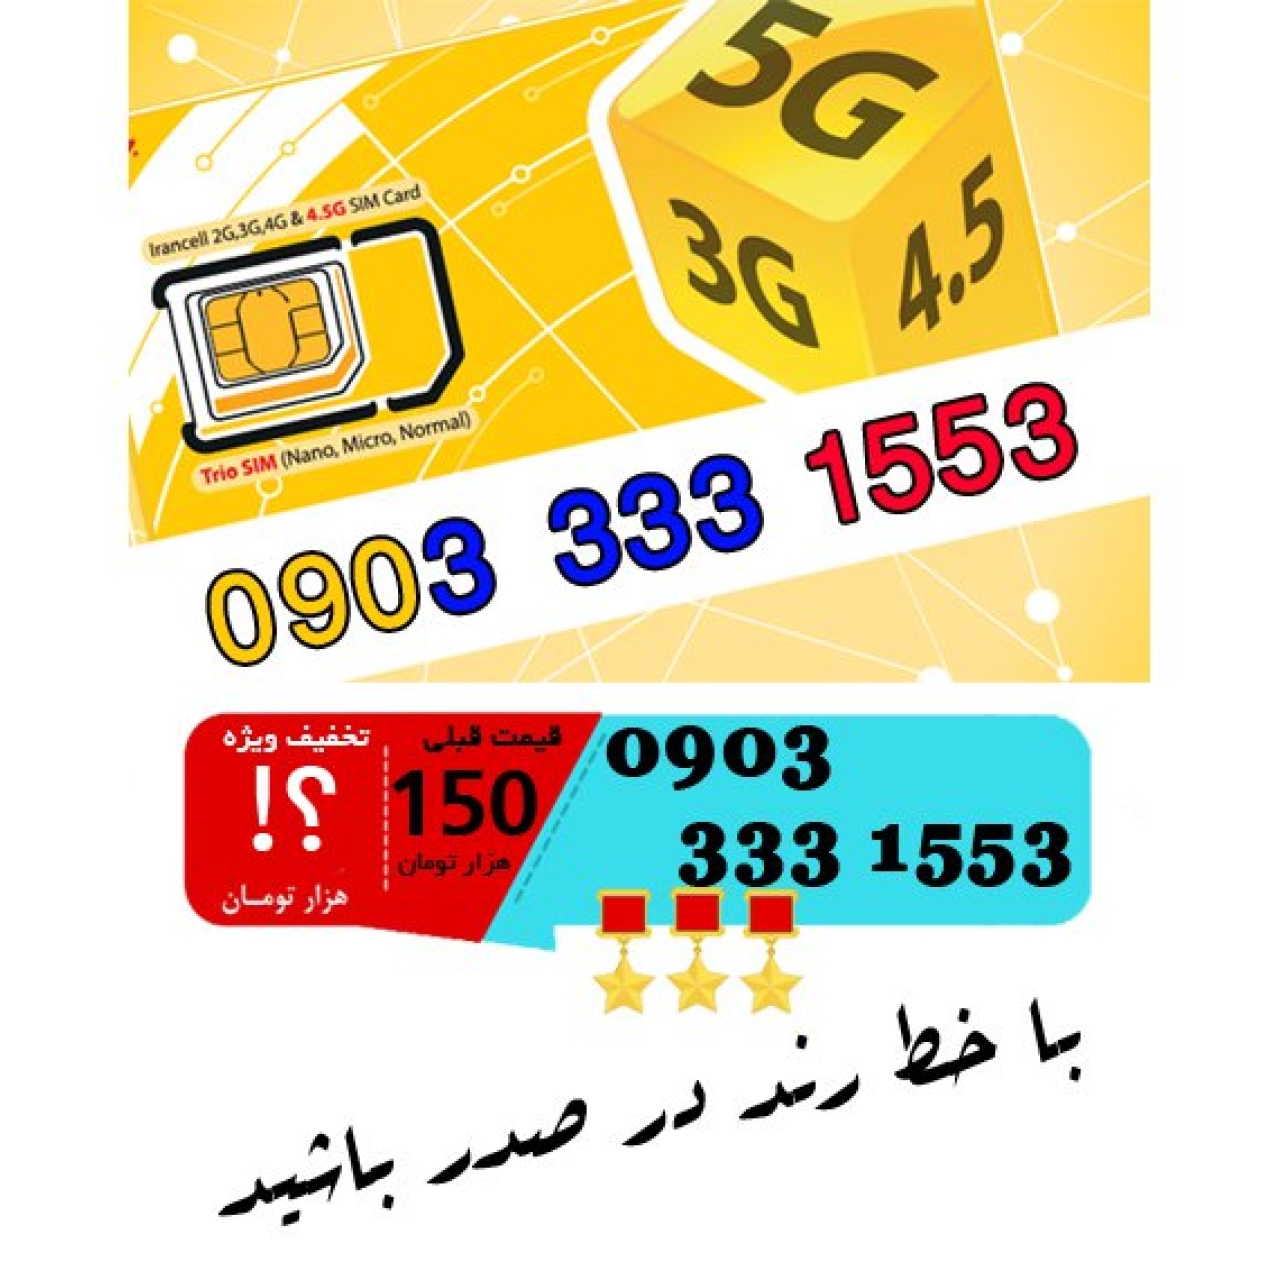 سیم کارت اعتباری ایرانسل 09033331553